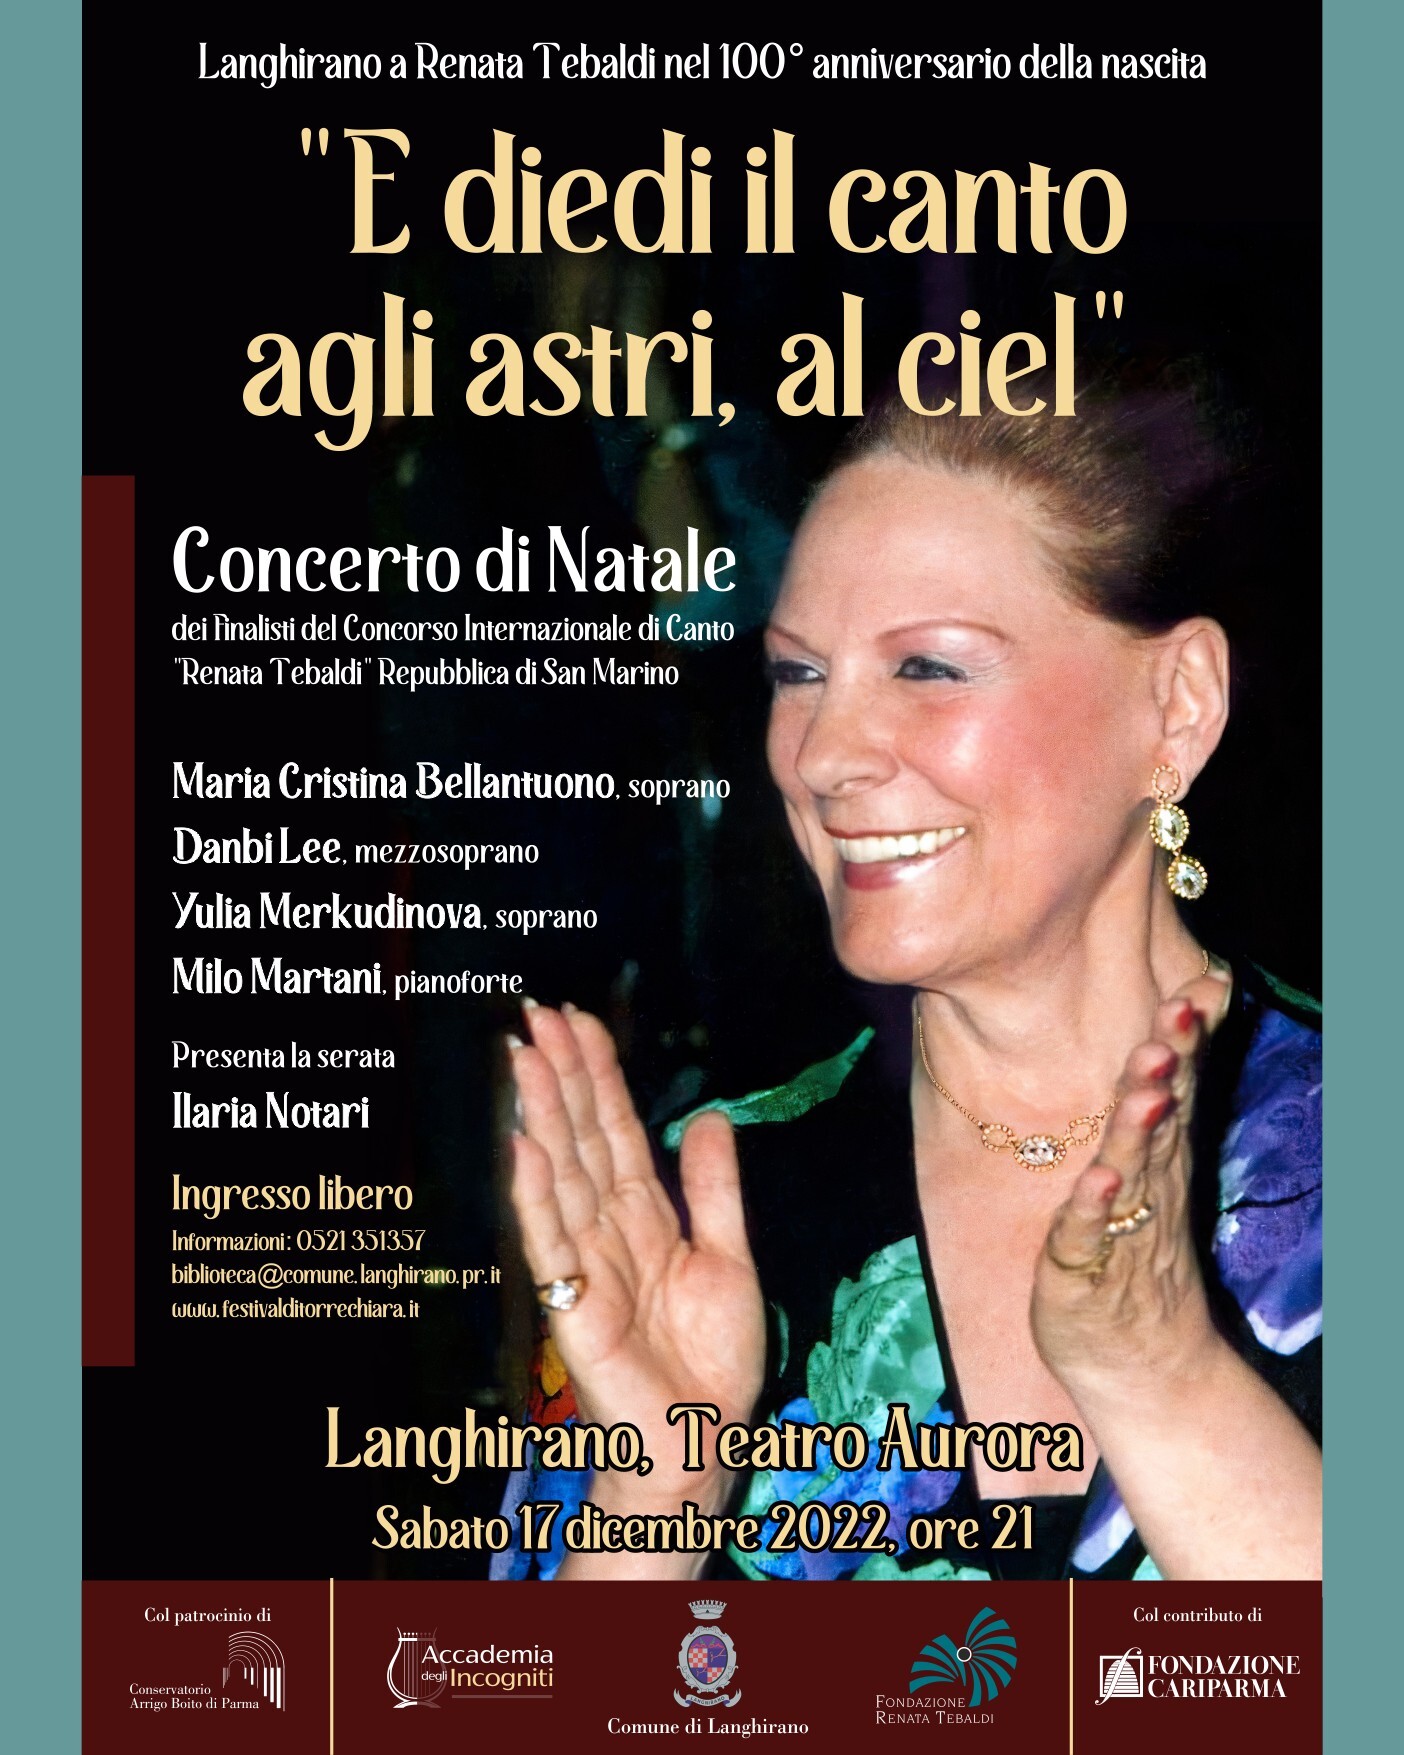 "E DIEDI IL CANTO AGLI ASTRI, AL CIEL" Langhirano a Renata Tebaldi nel 100° anniversario della nascita  Concerto di Natale